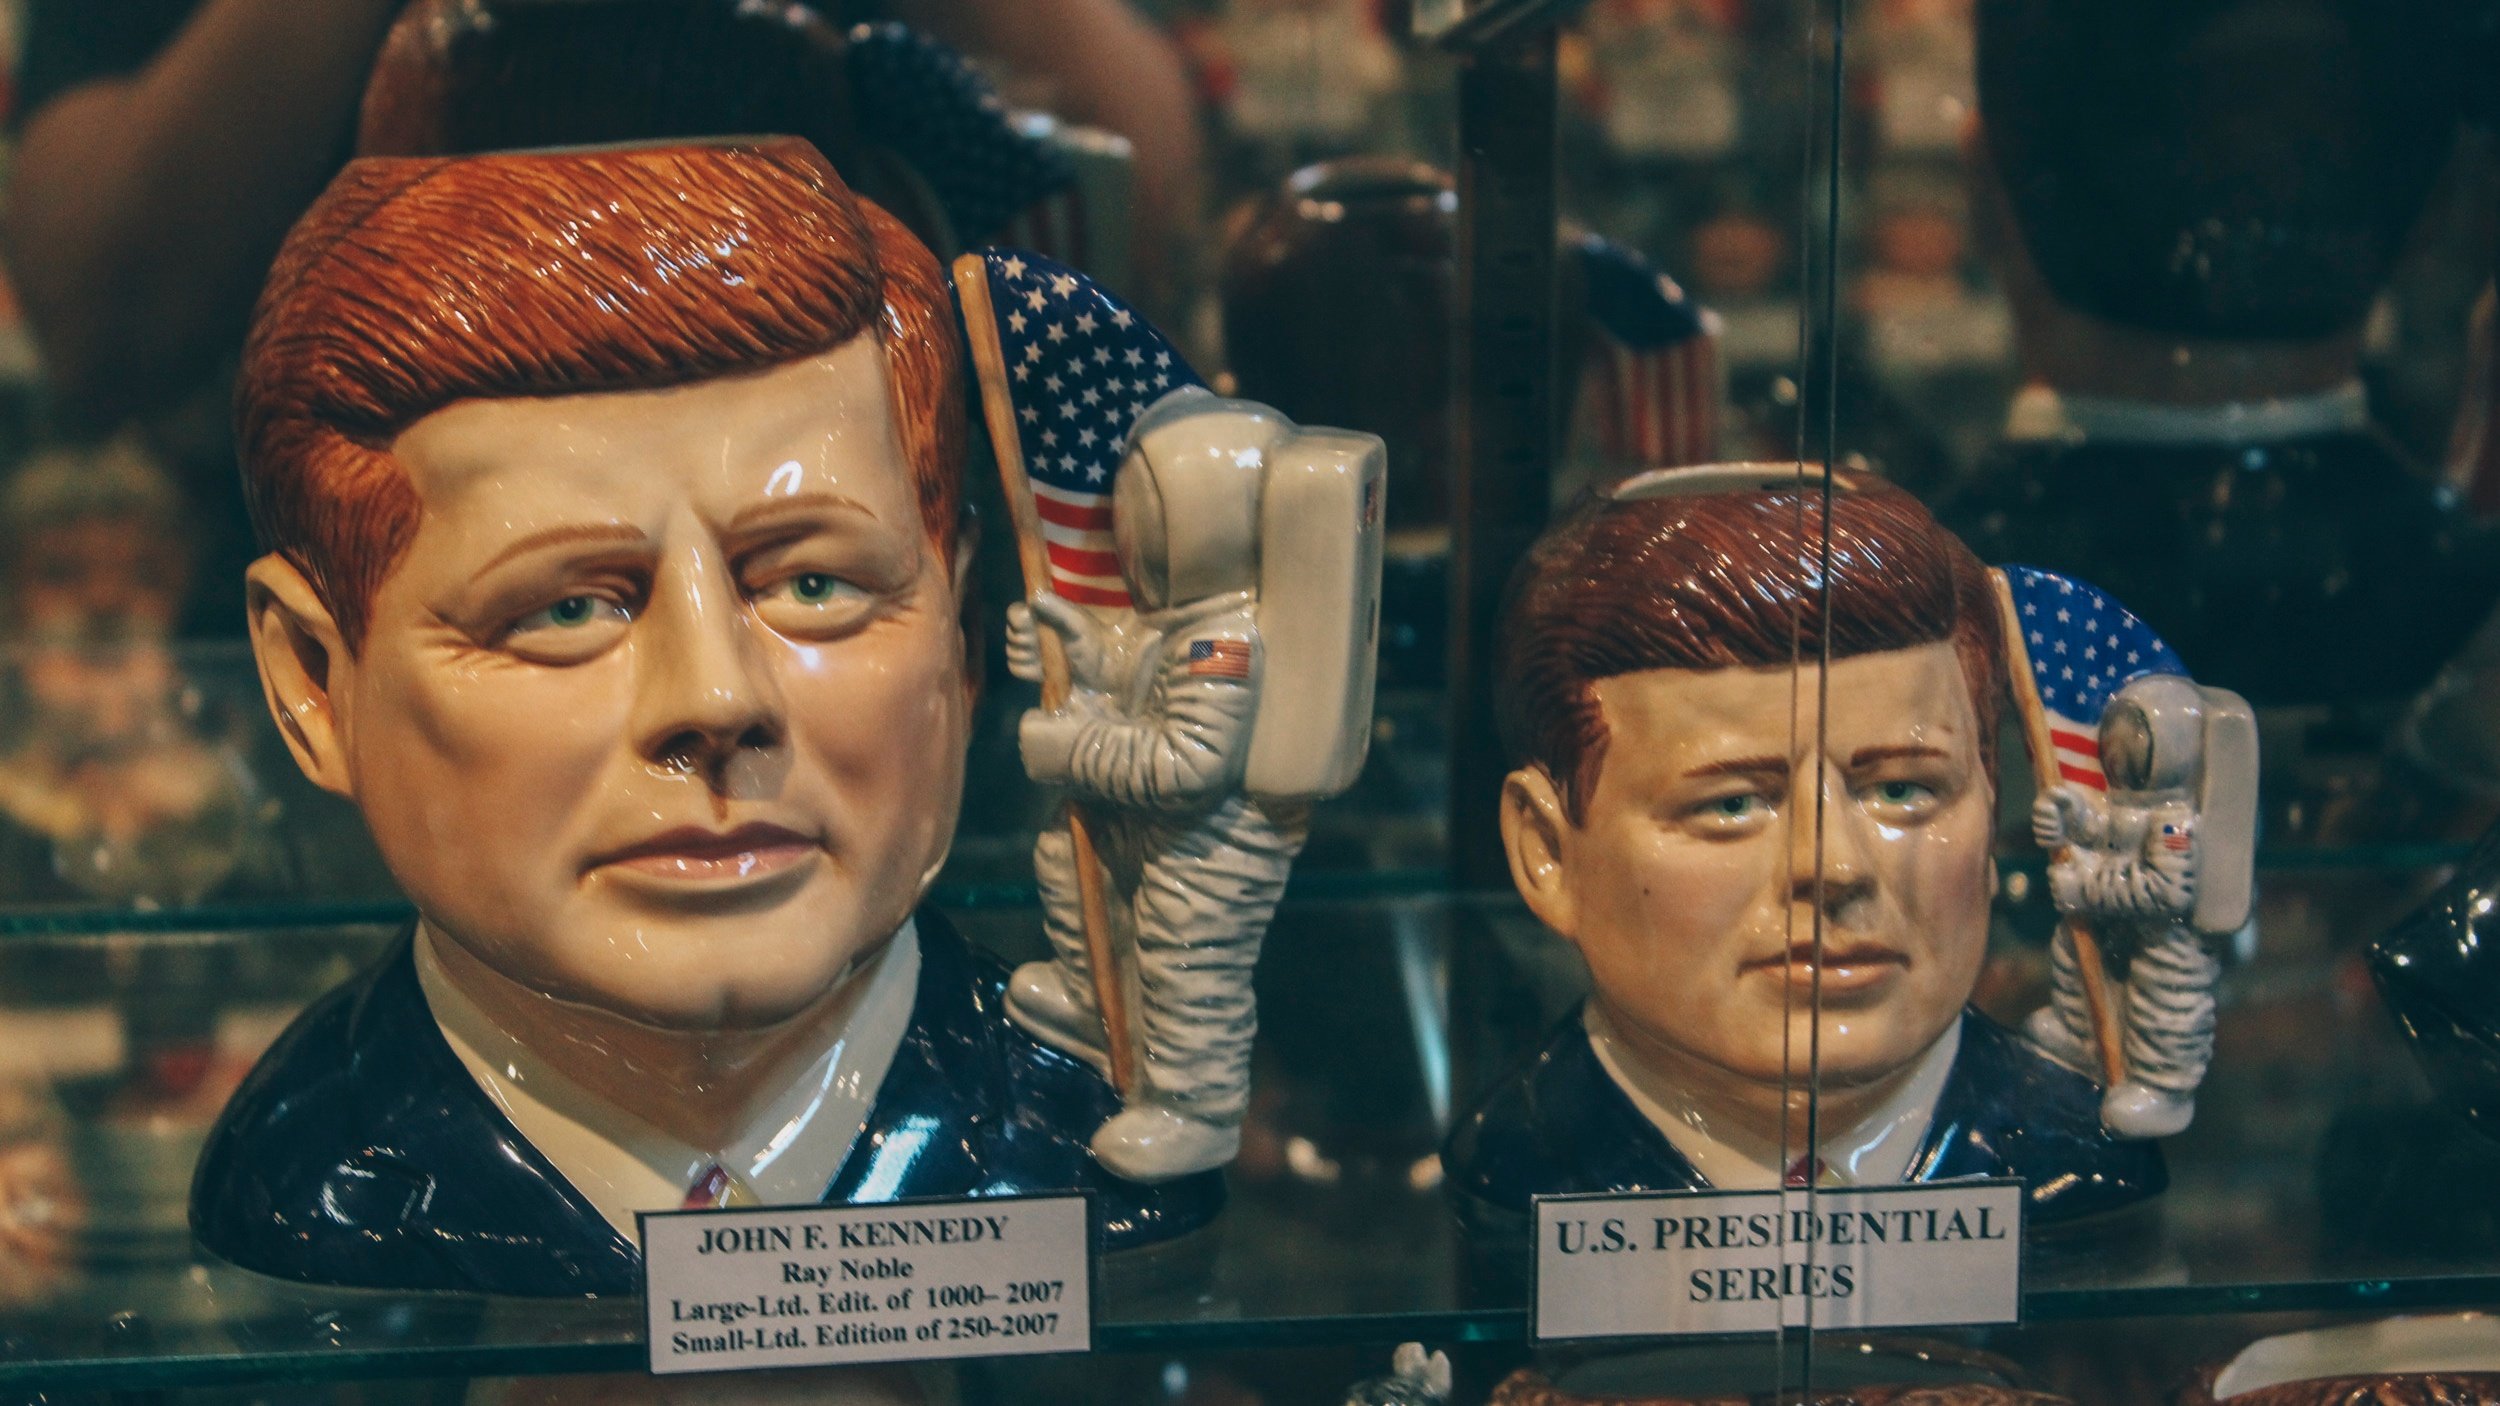 american toby jug museum presidential series.jpg